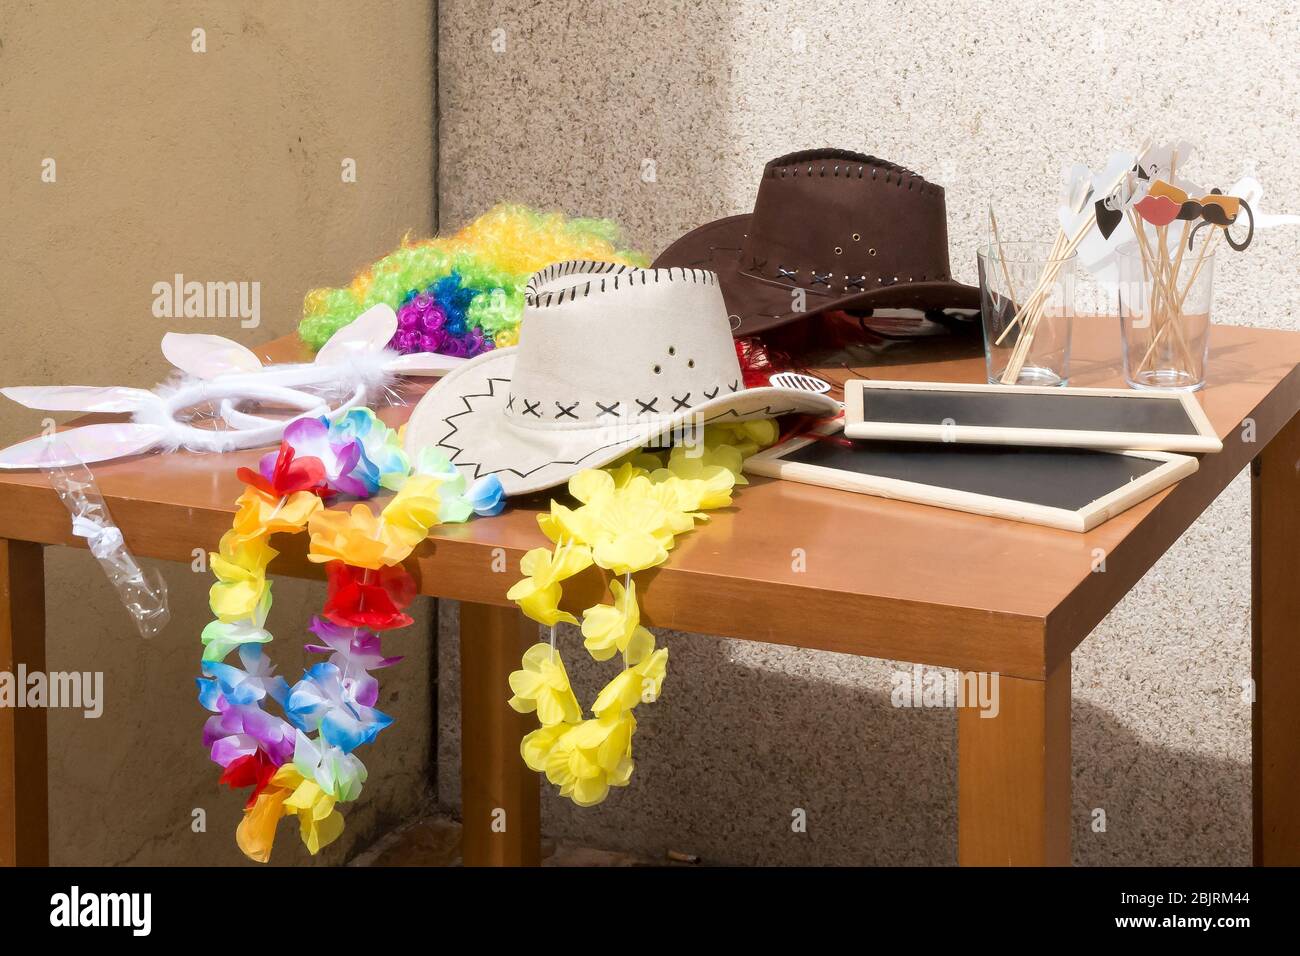 Sombrero blanco de vaquero junto a otros accesorios para una llamada de fotos en una mesa. Foto de stock